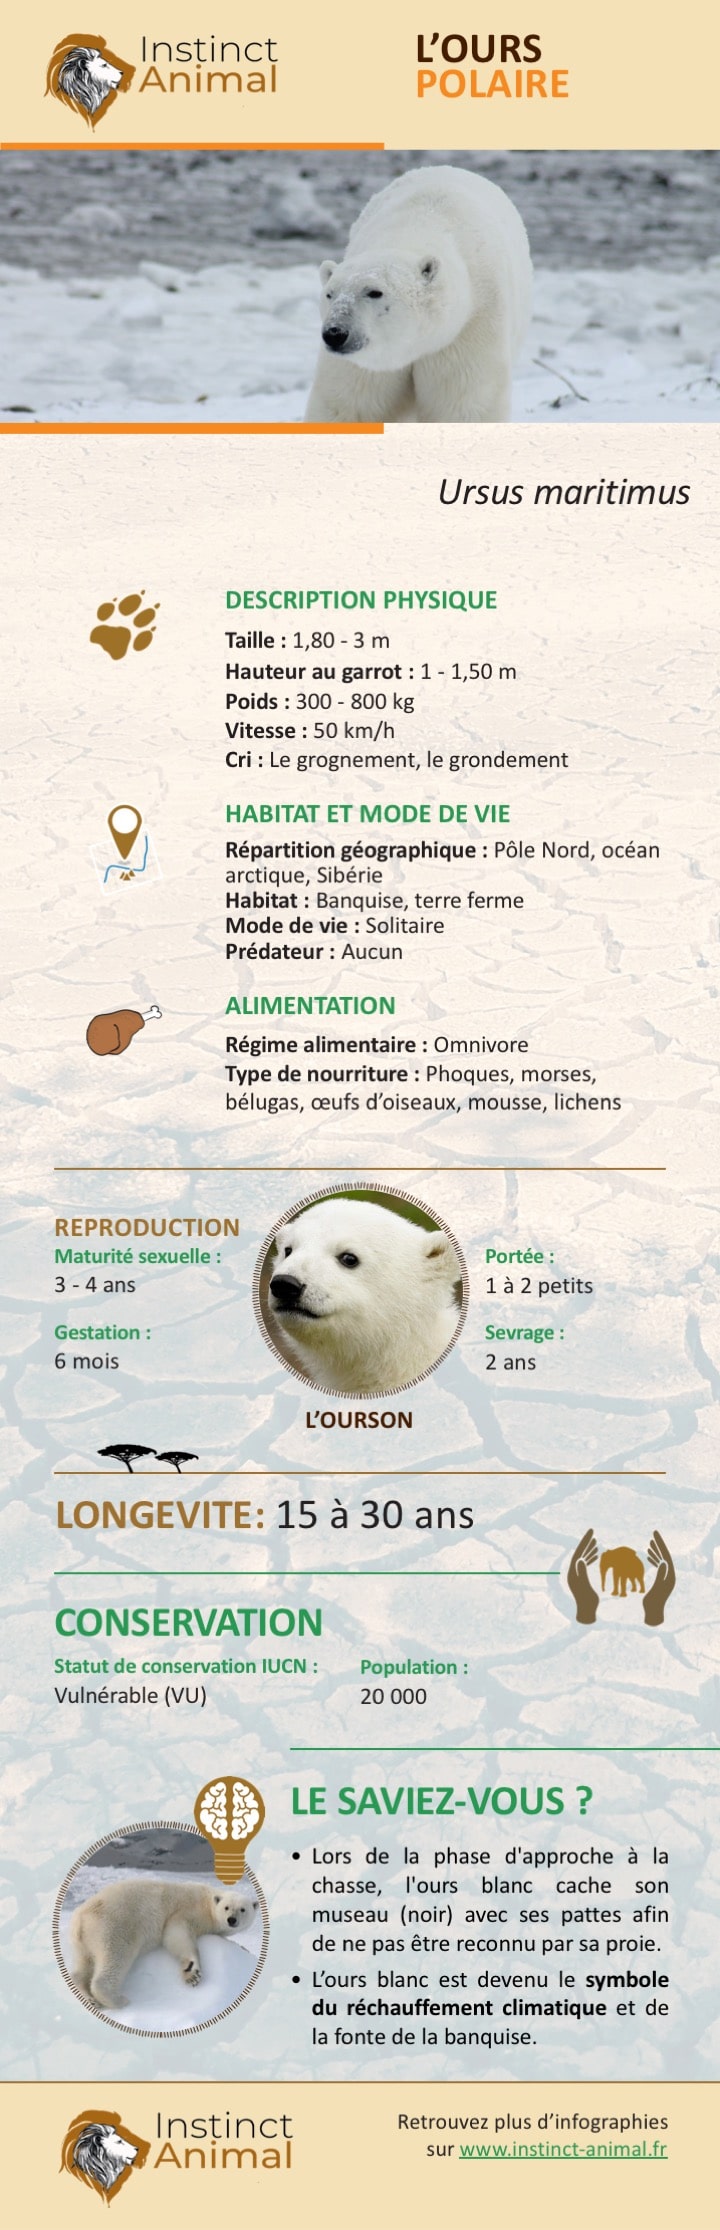 Description de l'ours polaire (ours blanc) - Infographie - Instinct Animal